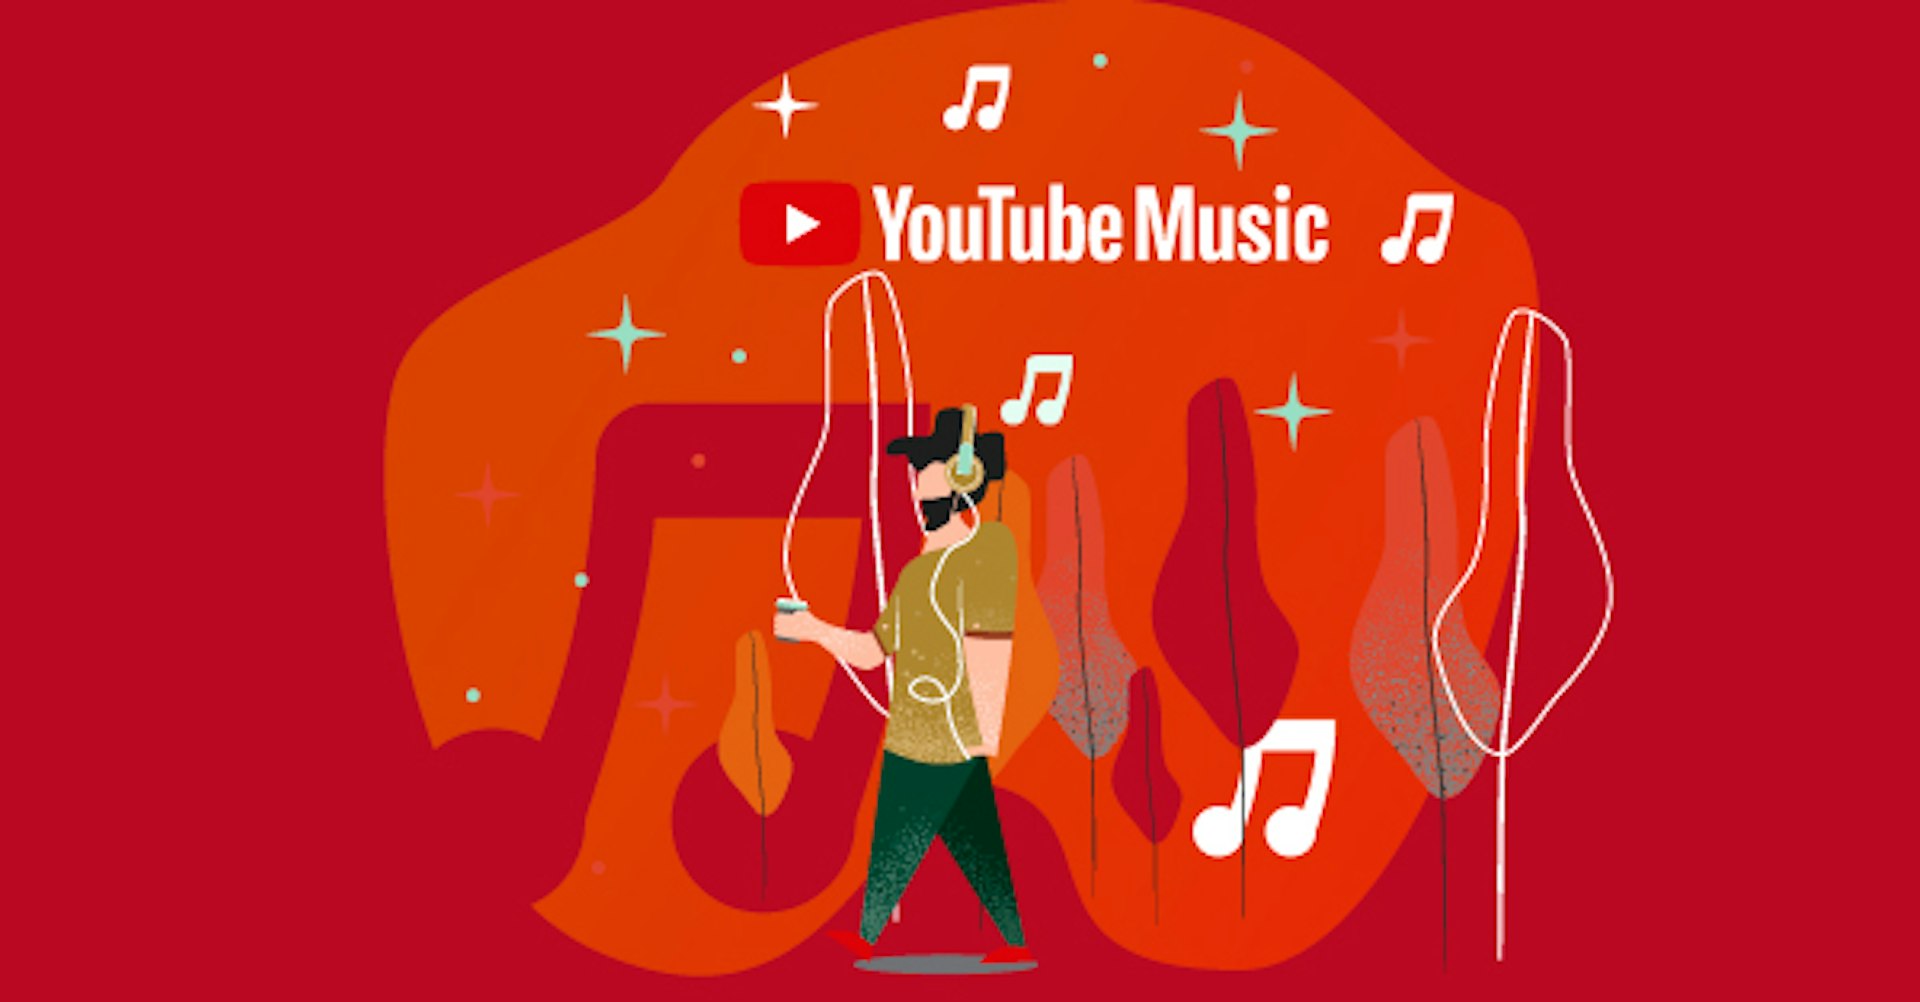 Llega YouTube Music y Premium. ¿Los conoces?